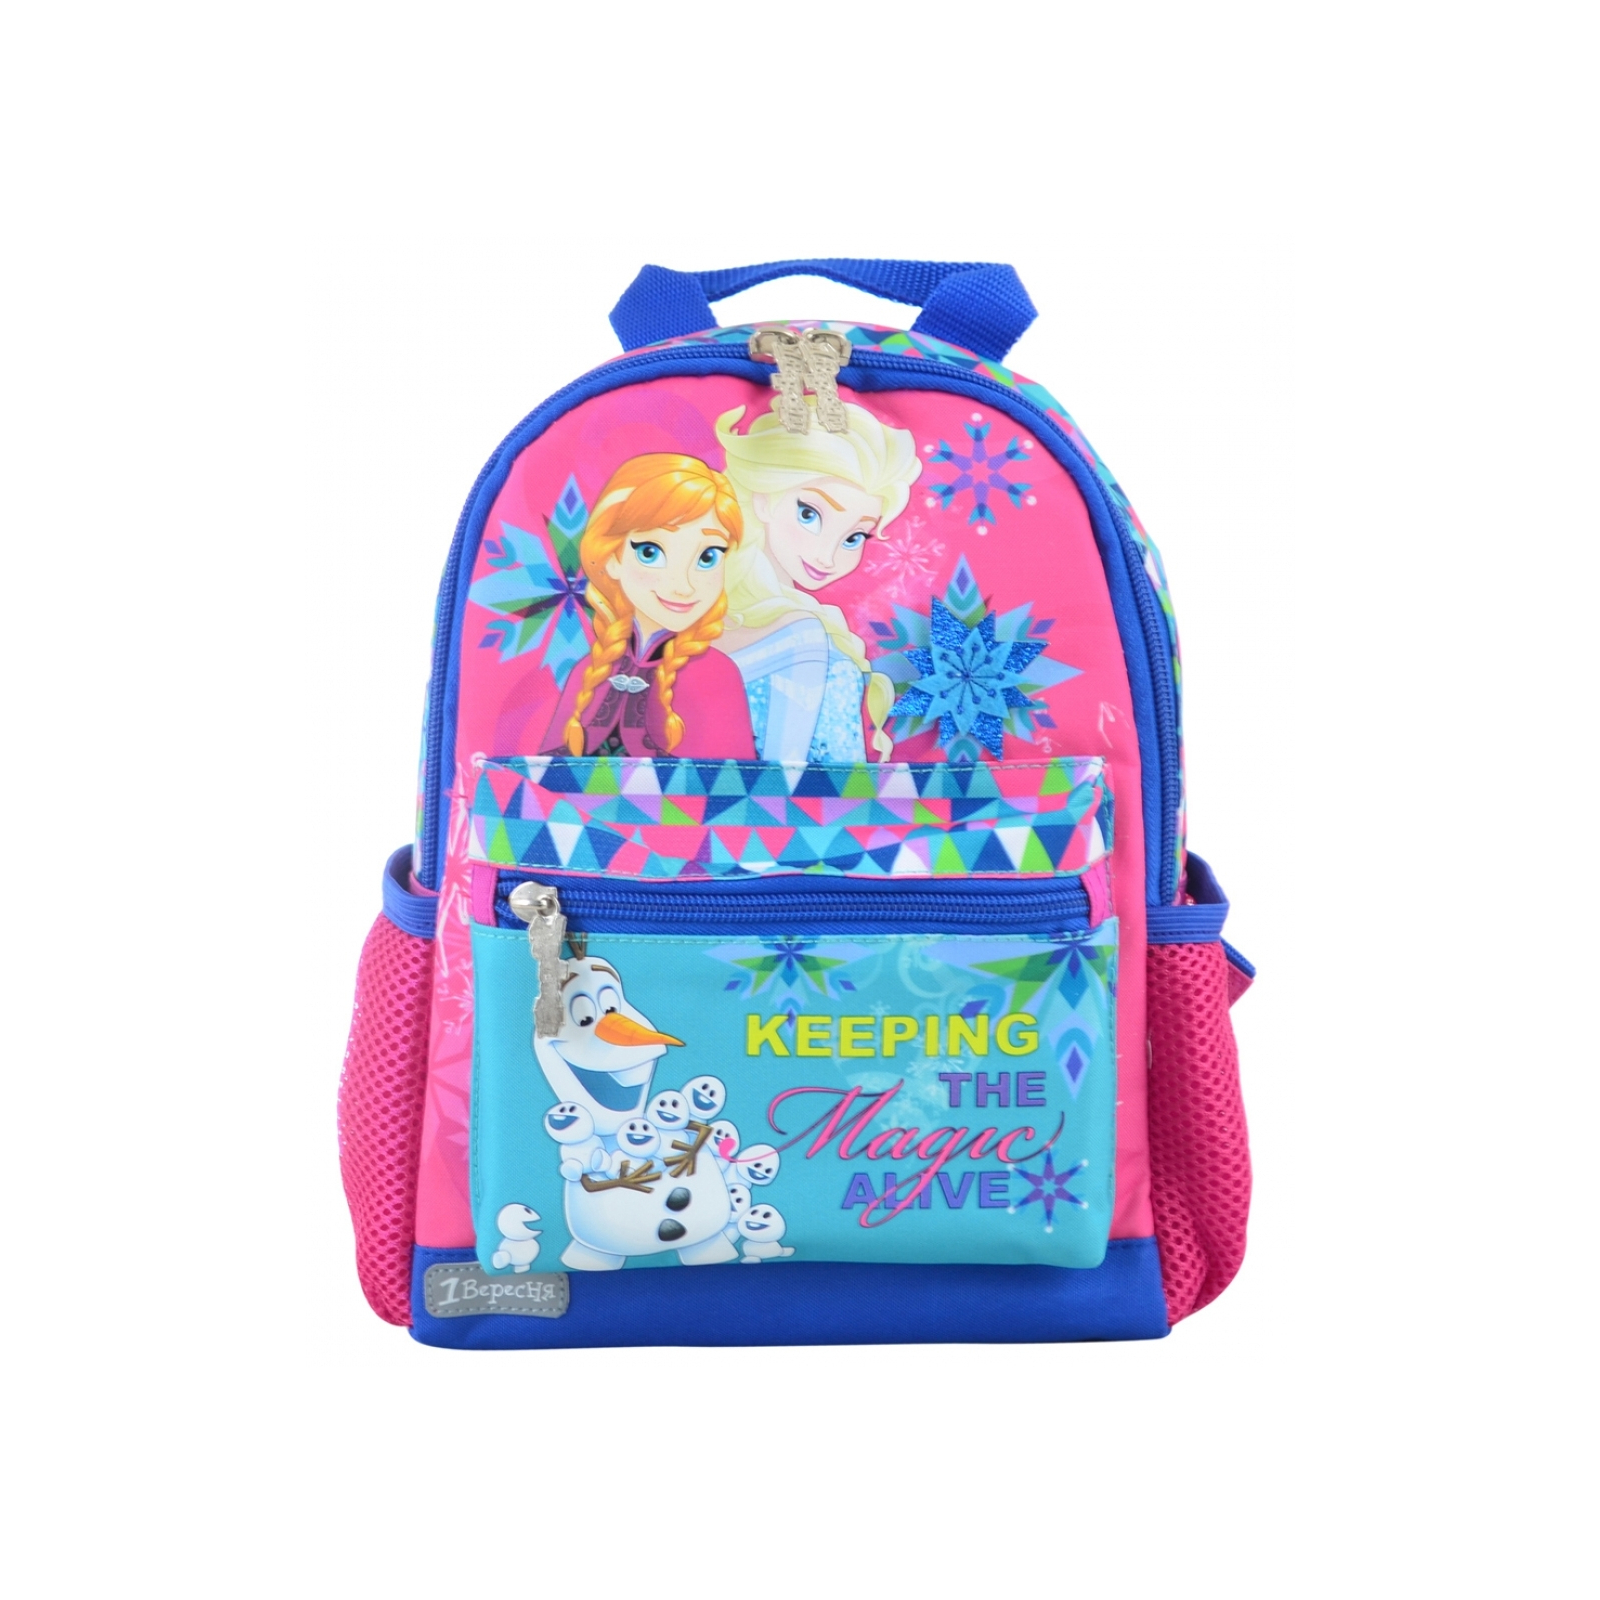 Рюкзак шкільний 1 вересня K-16 Frozen (554754)